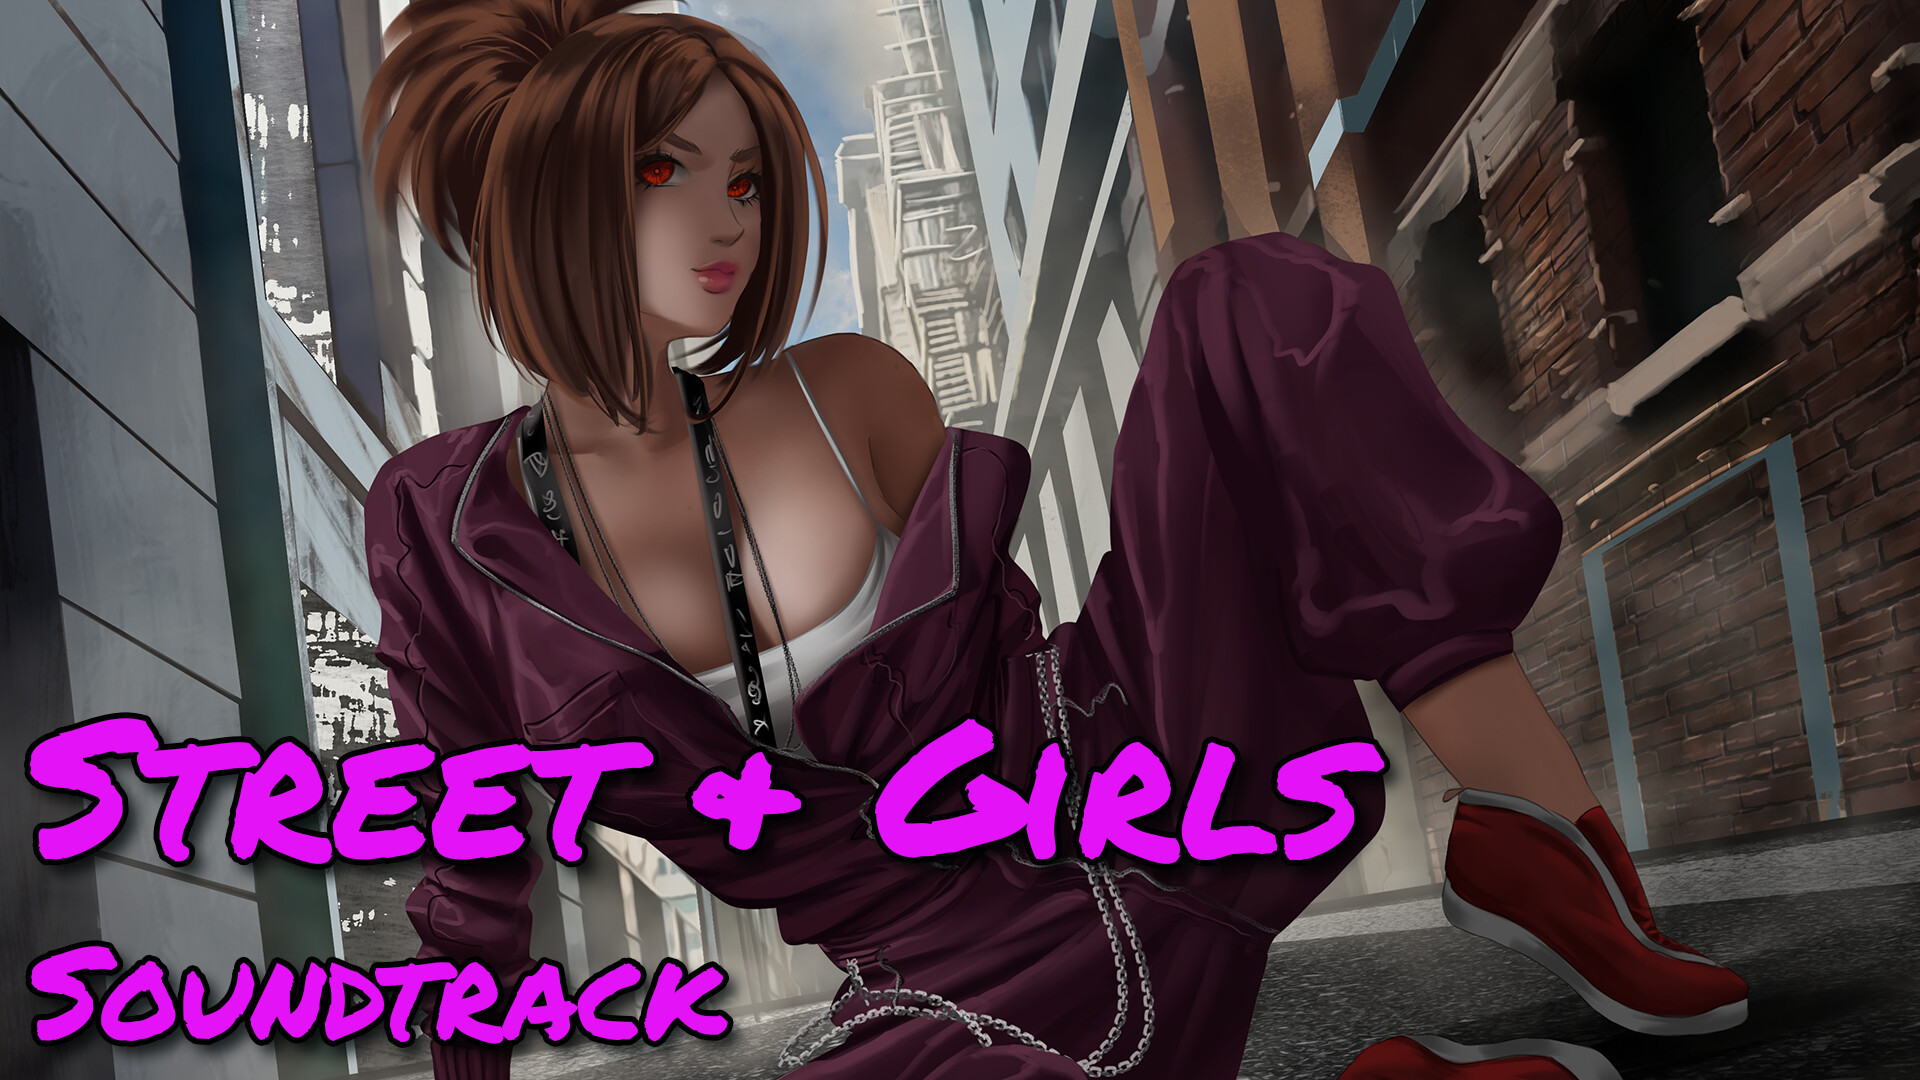 Street & Girls Soundtrack Featured Screenshot #1